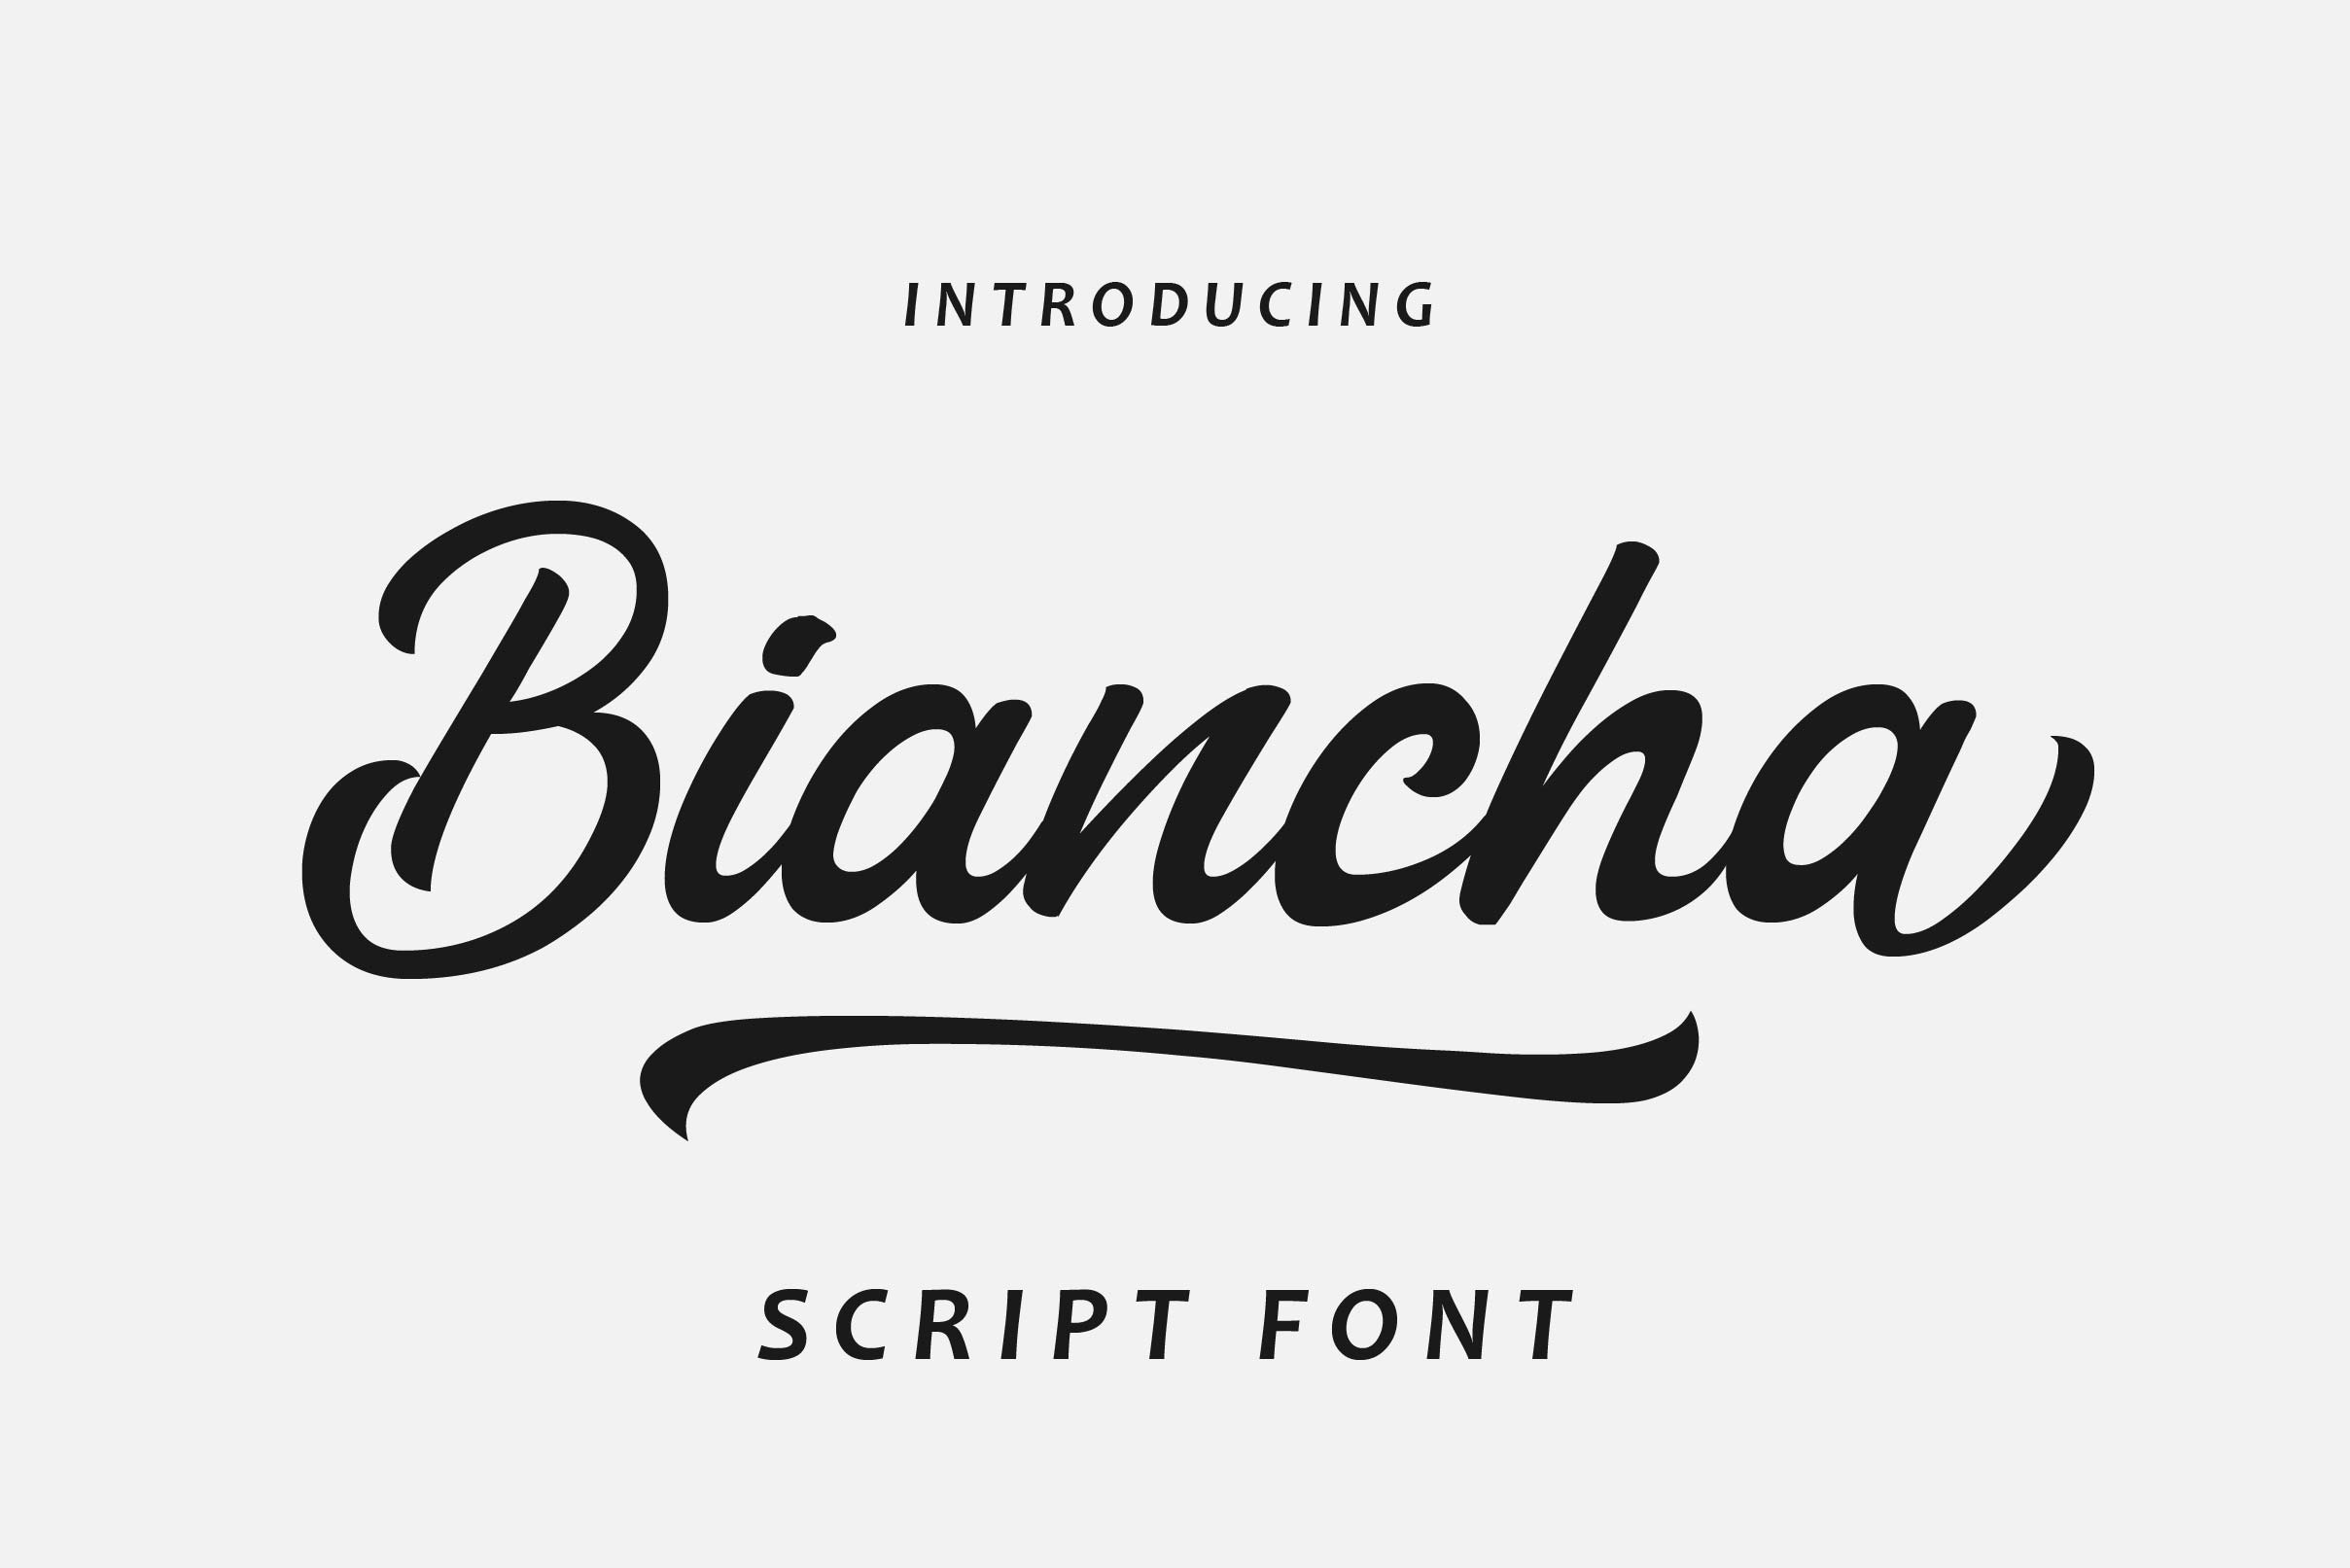 Biancha Script Font